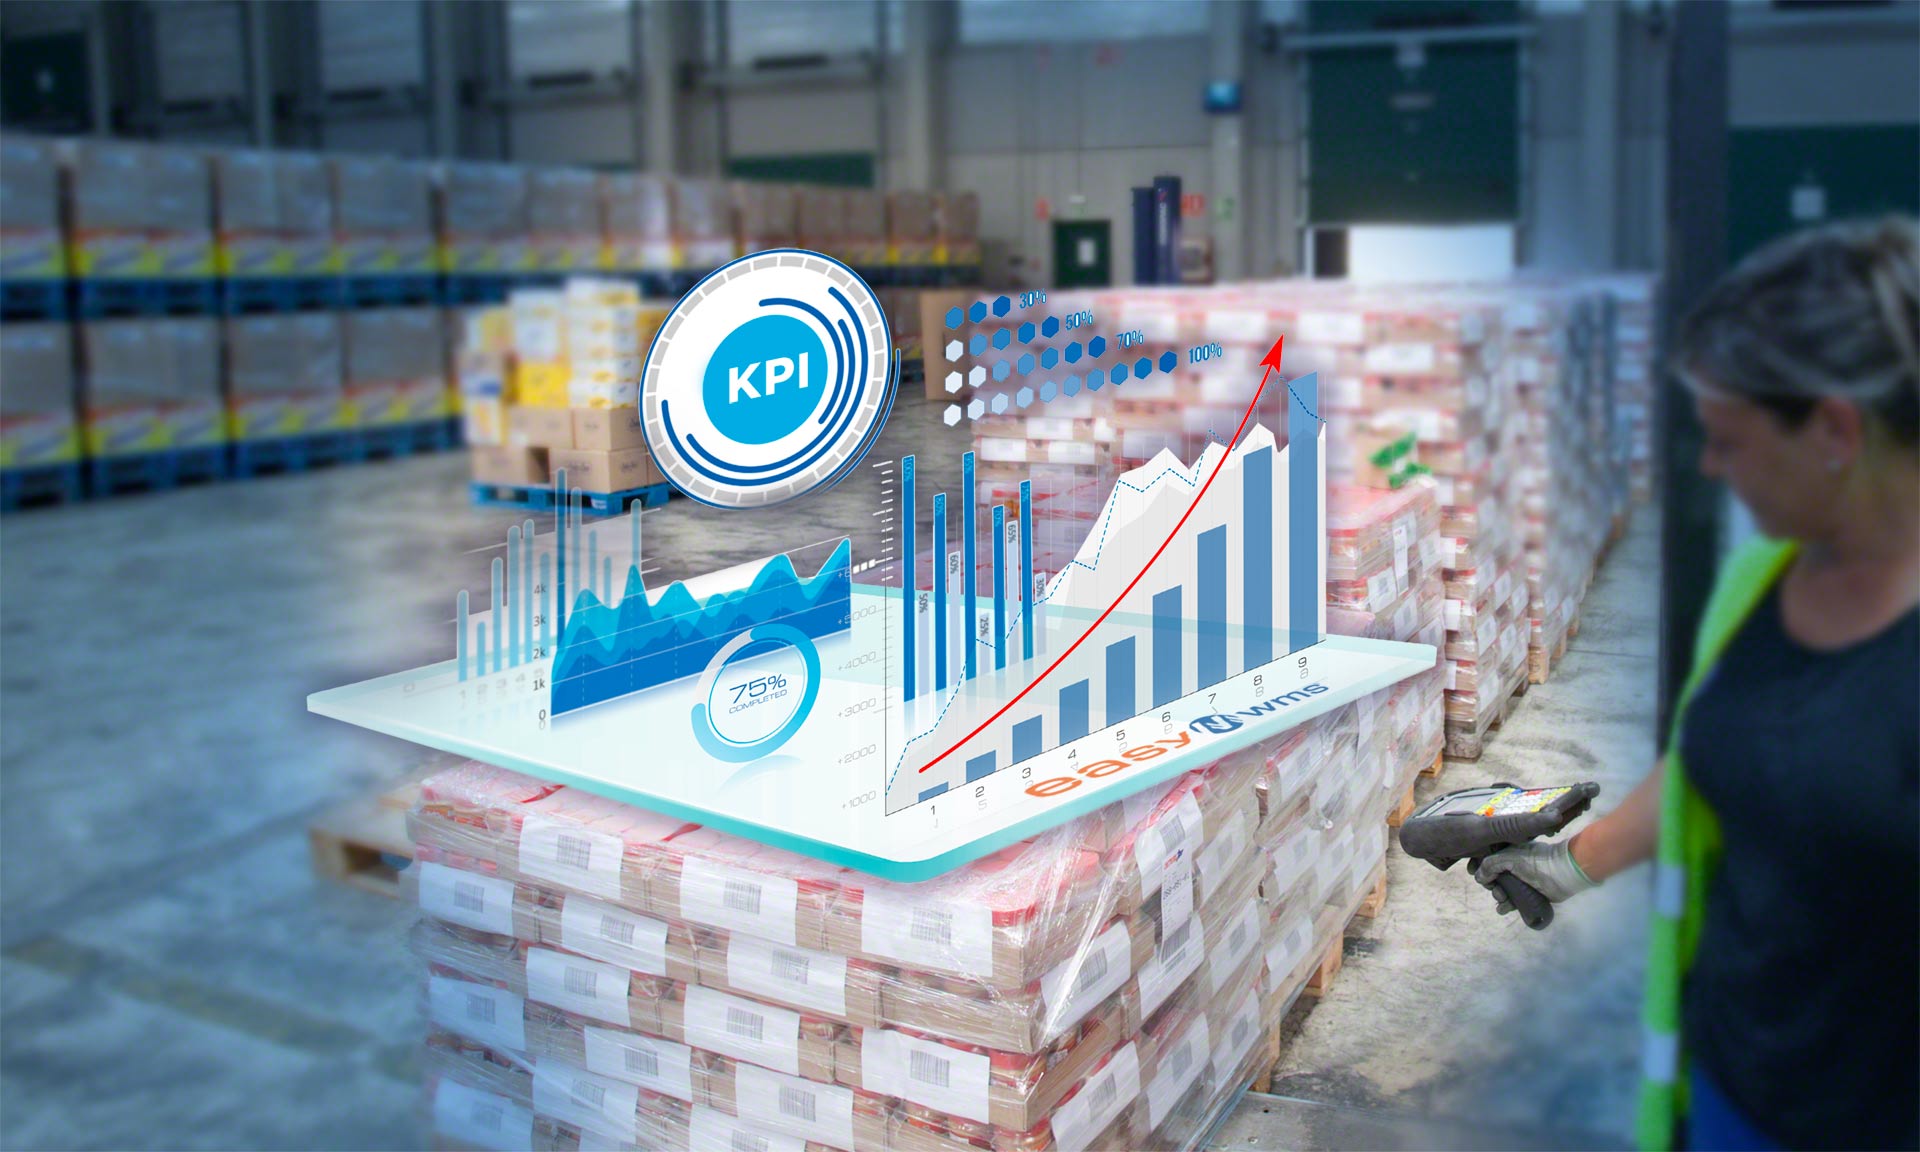 Los KPI de inventario facilitan un conocimiento exhaustivo sobre las existencias almacenadas en la instalación